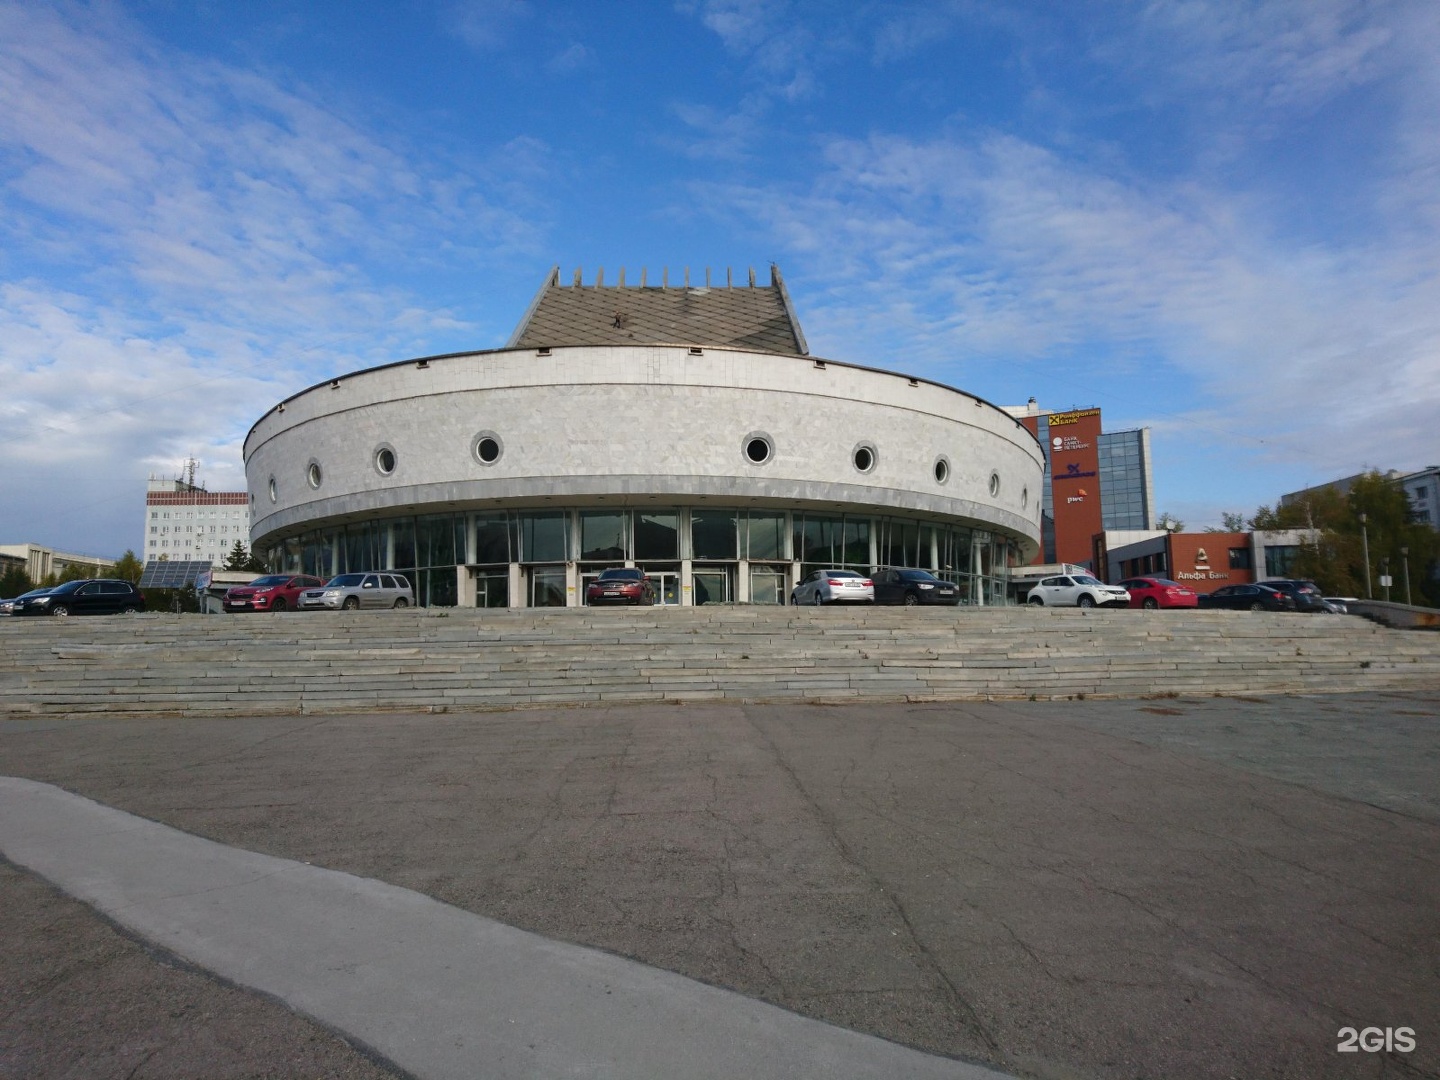 театр глобус новосибирск малый зал